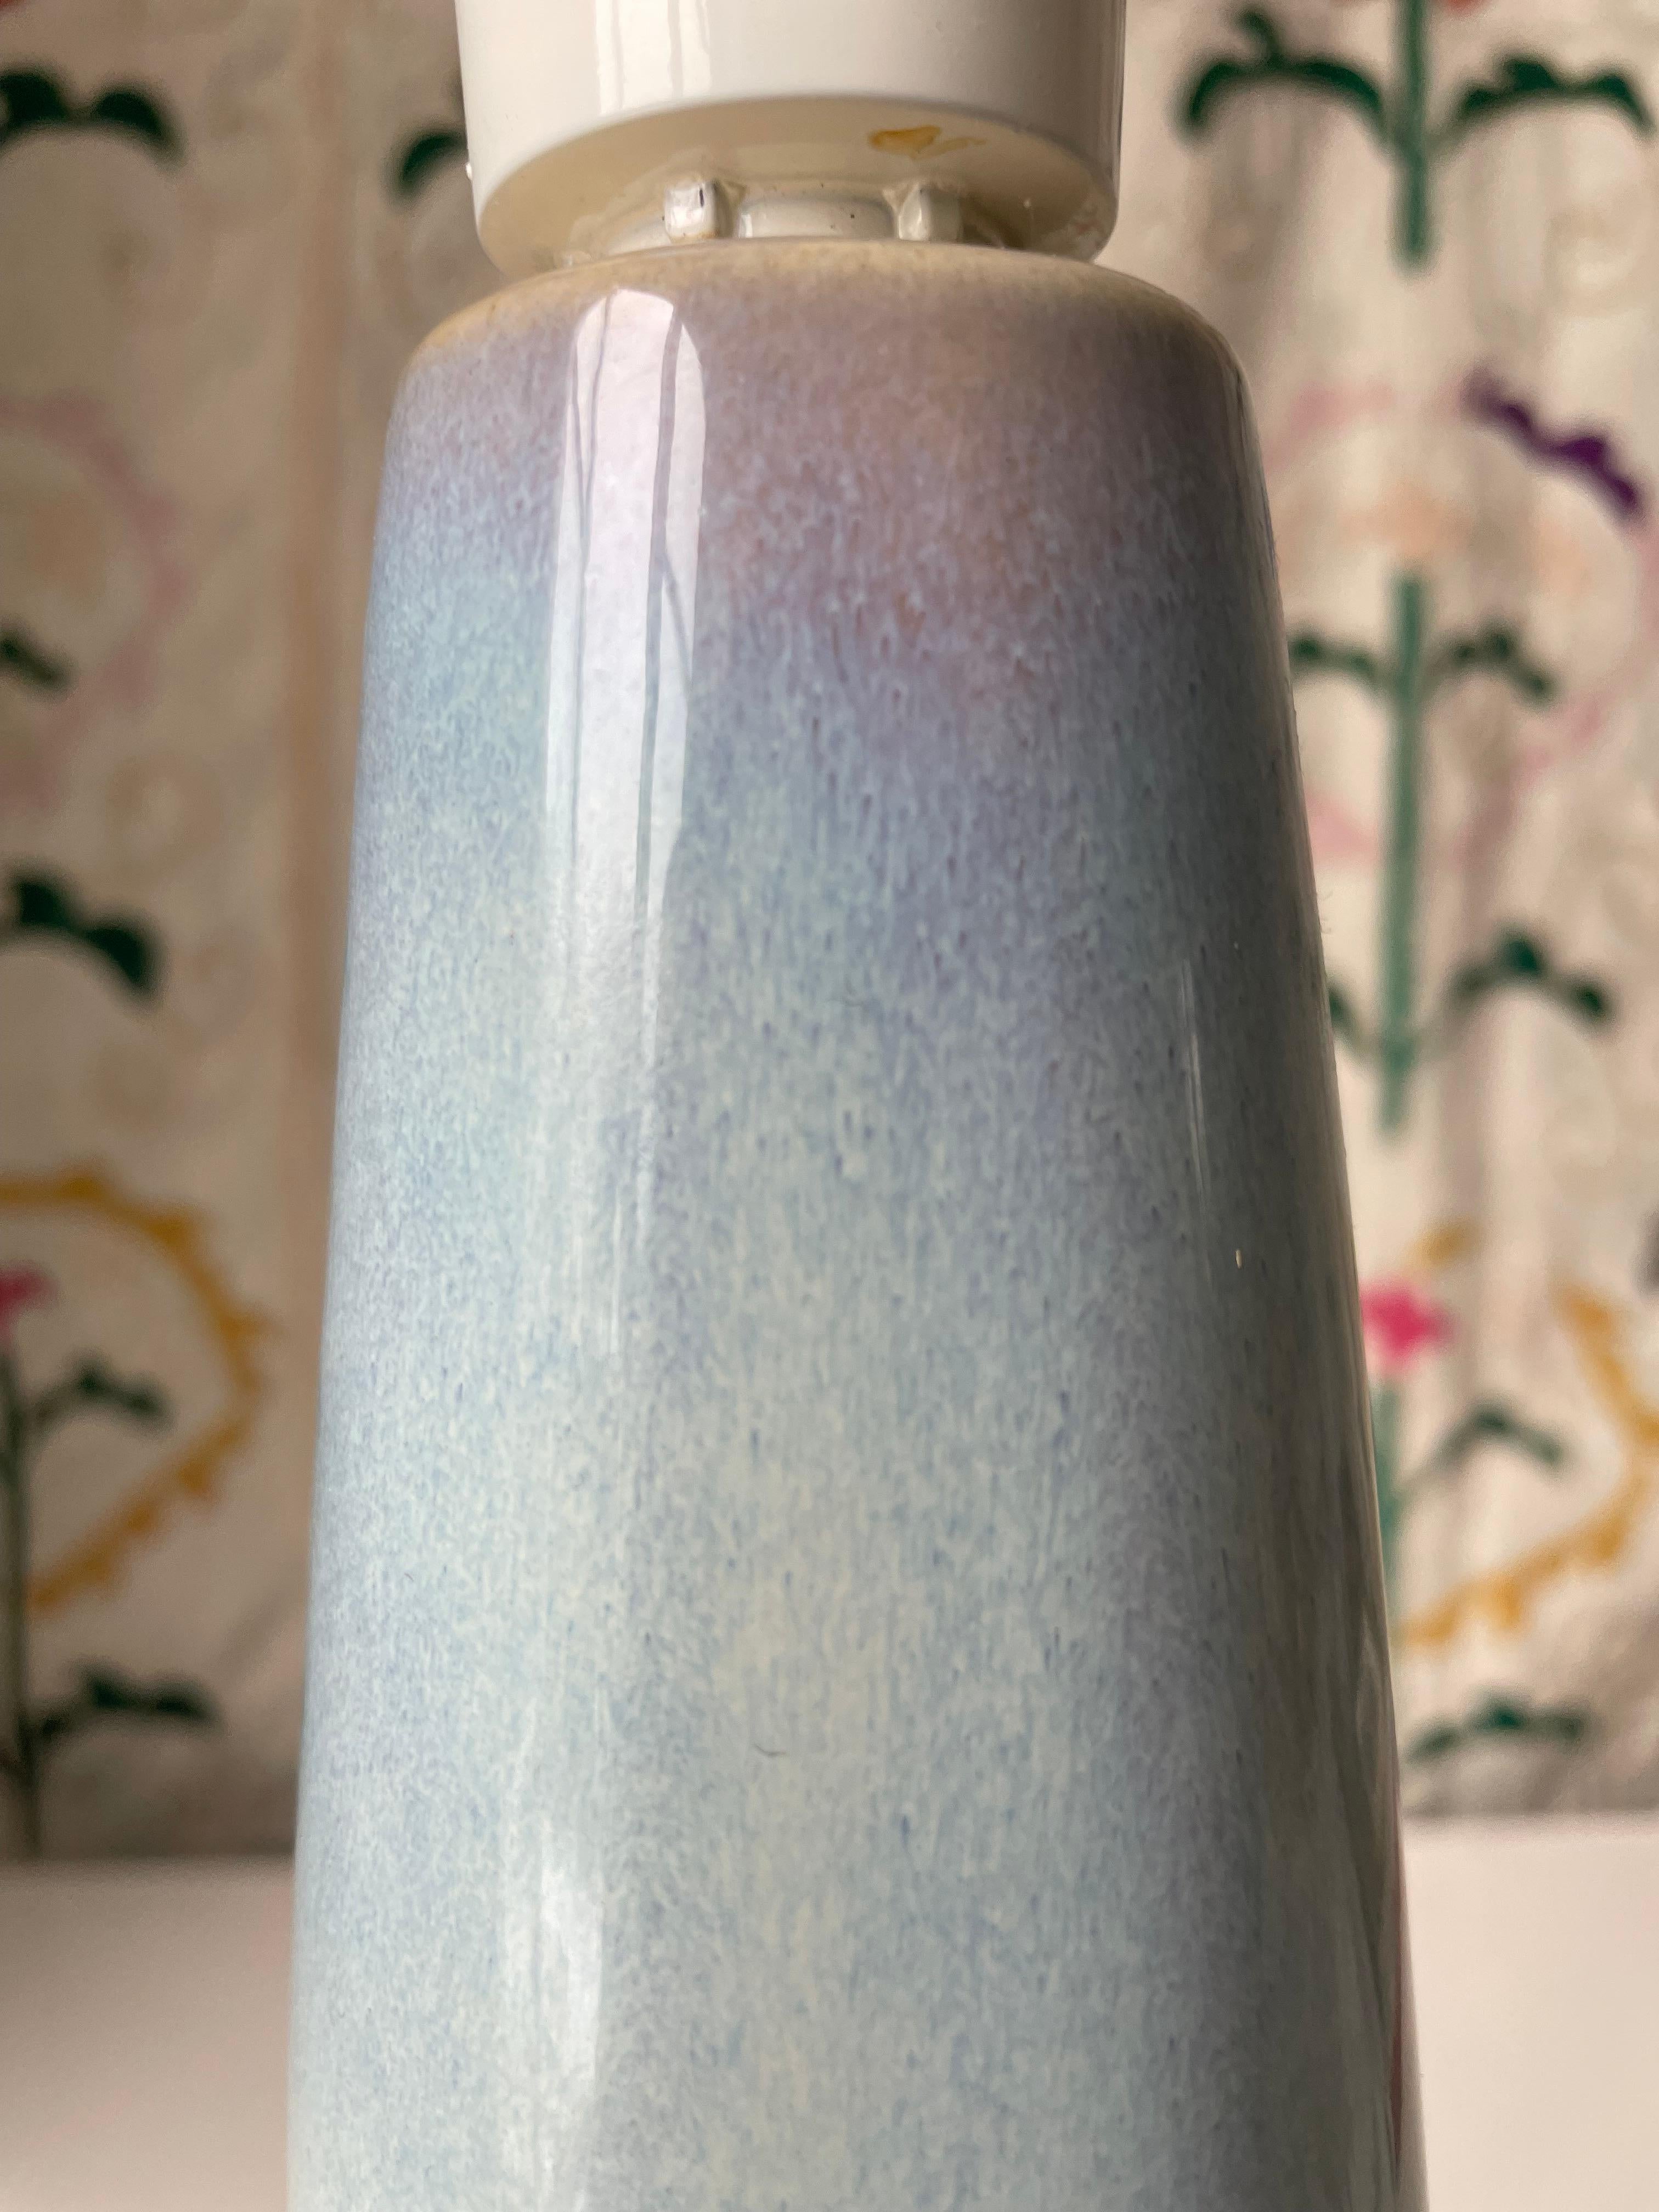 Einar Johansen Pastel Blue Sculptural Danish Modern Lamp, 1960s For Sale 4